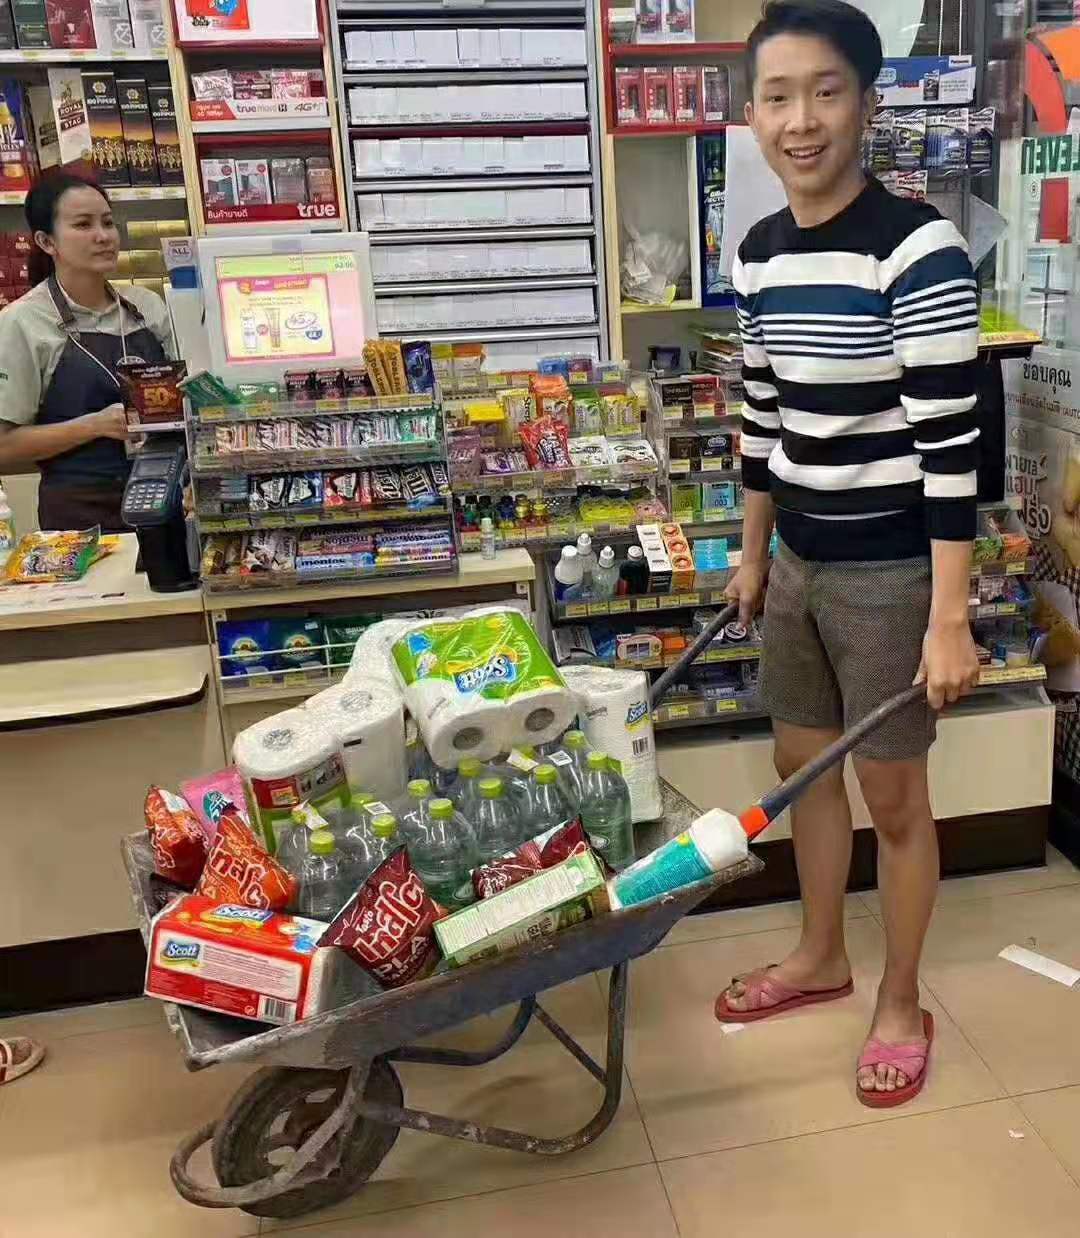 泰国购物中心停用塑料袋 市民发挥创意购物